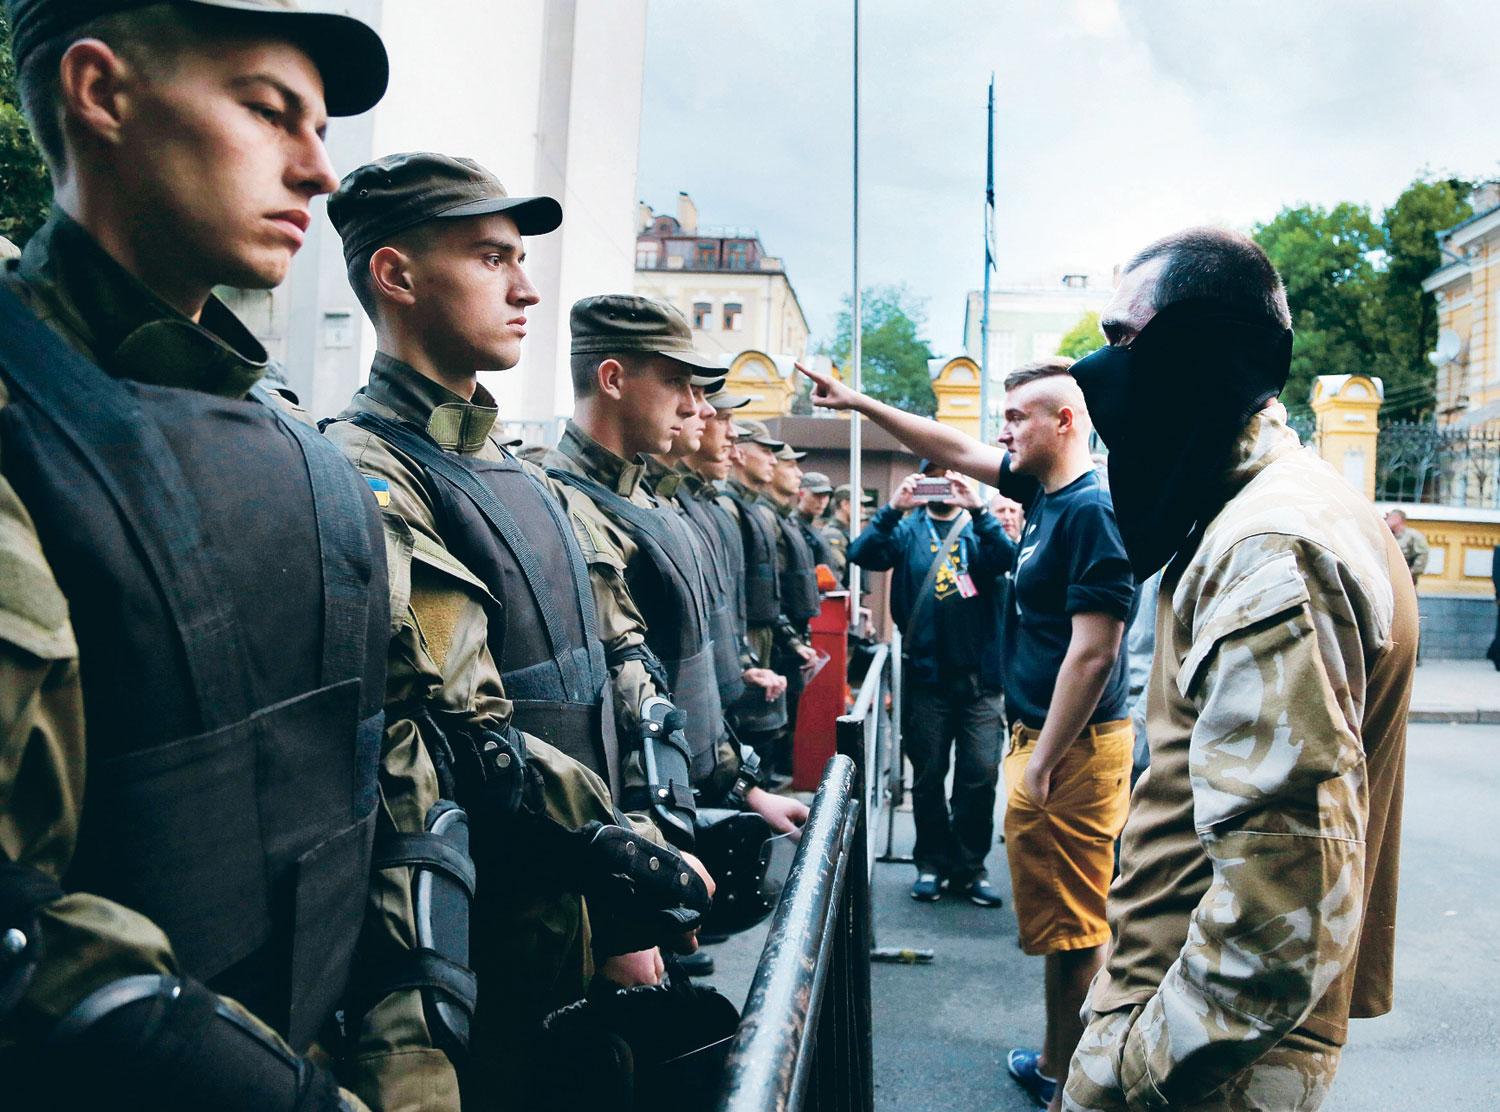 A Jobboldali Szektor tagjai Kijevben tüntetnek